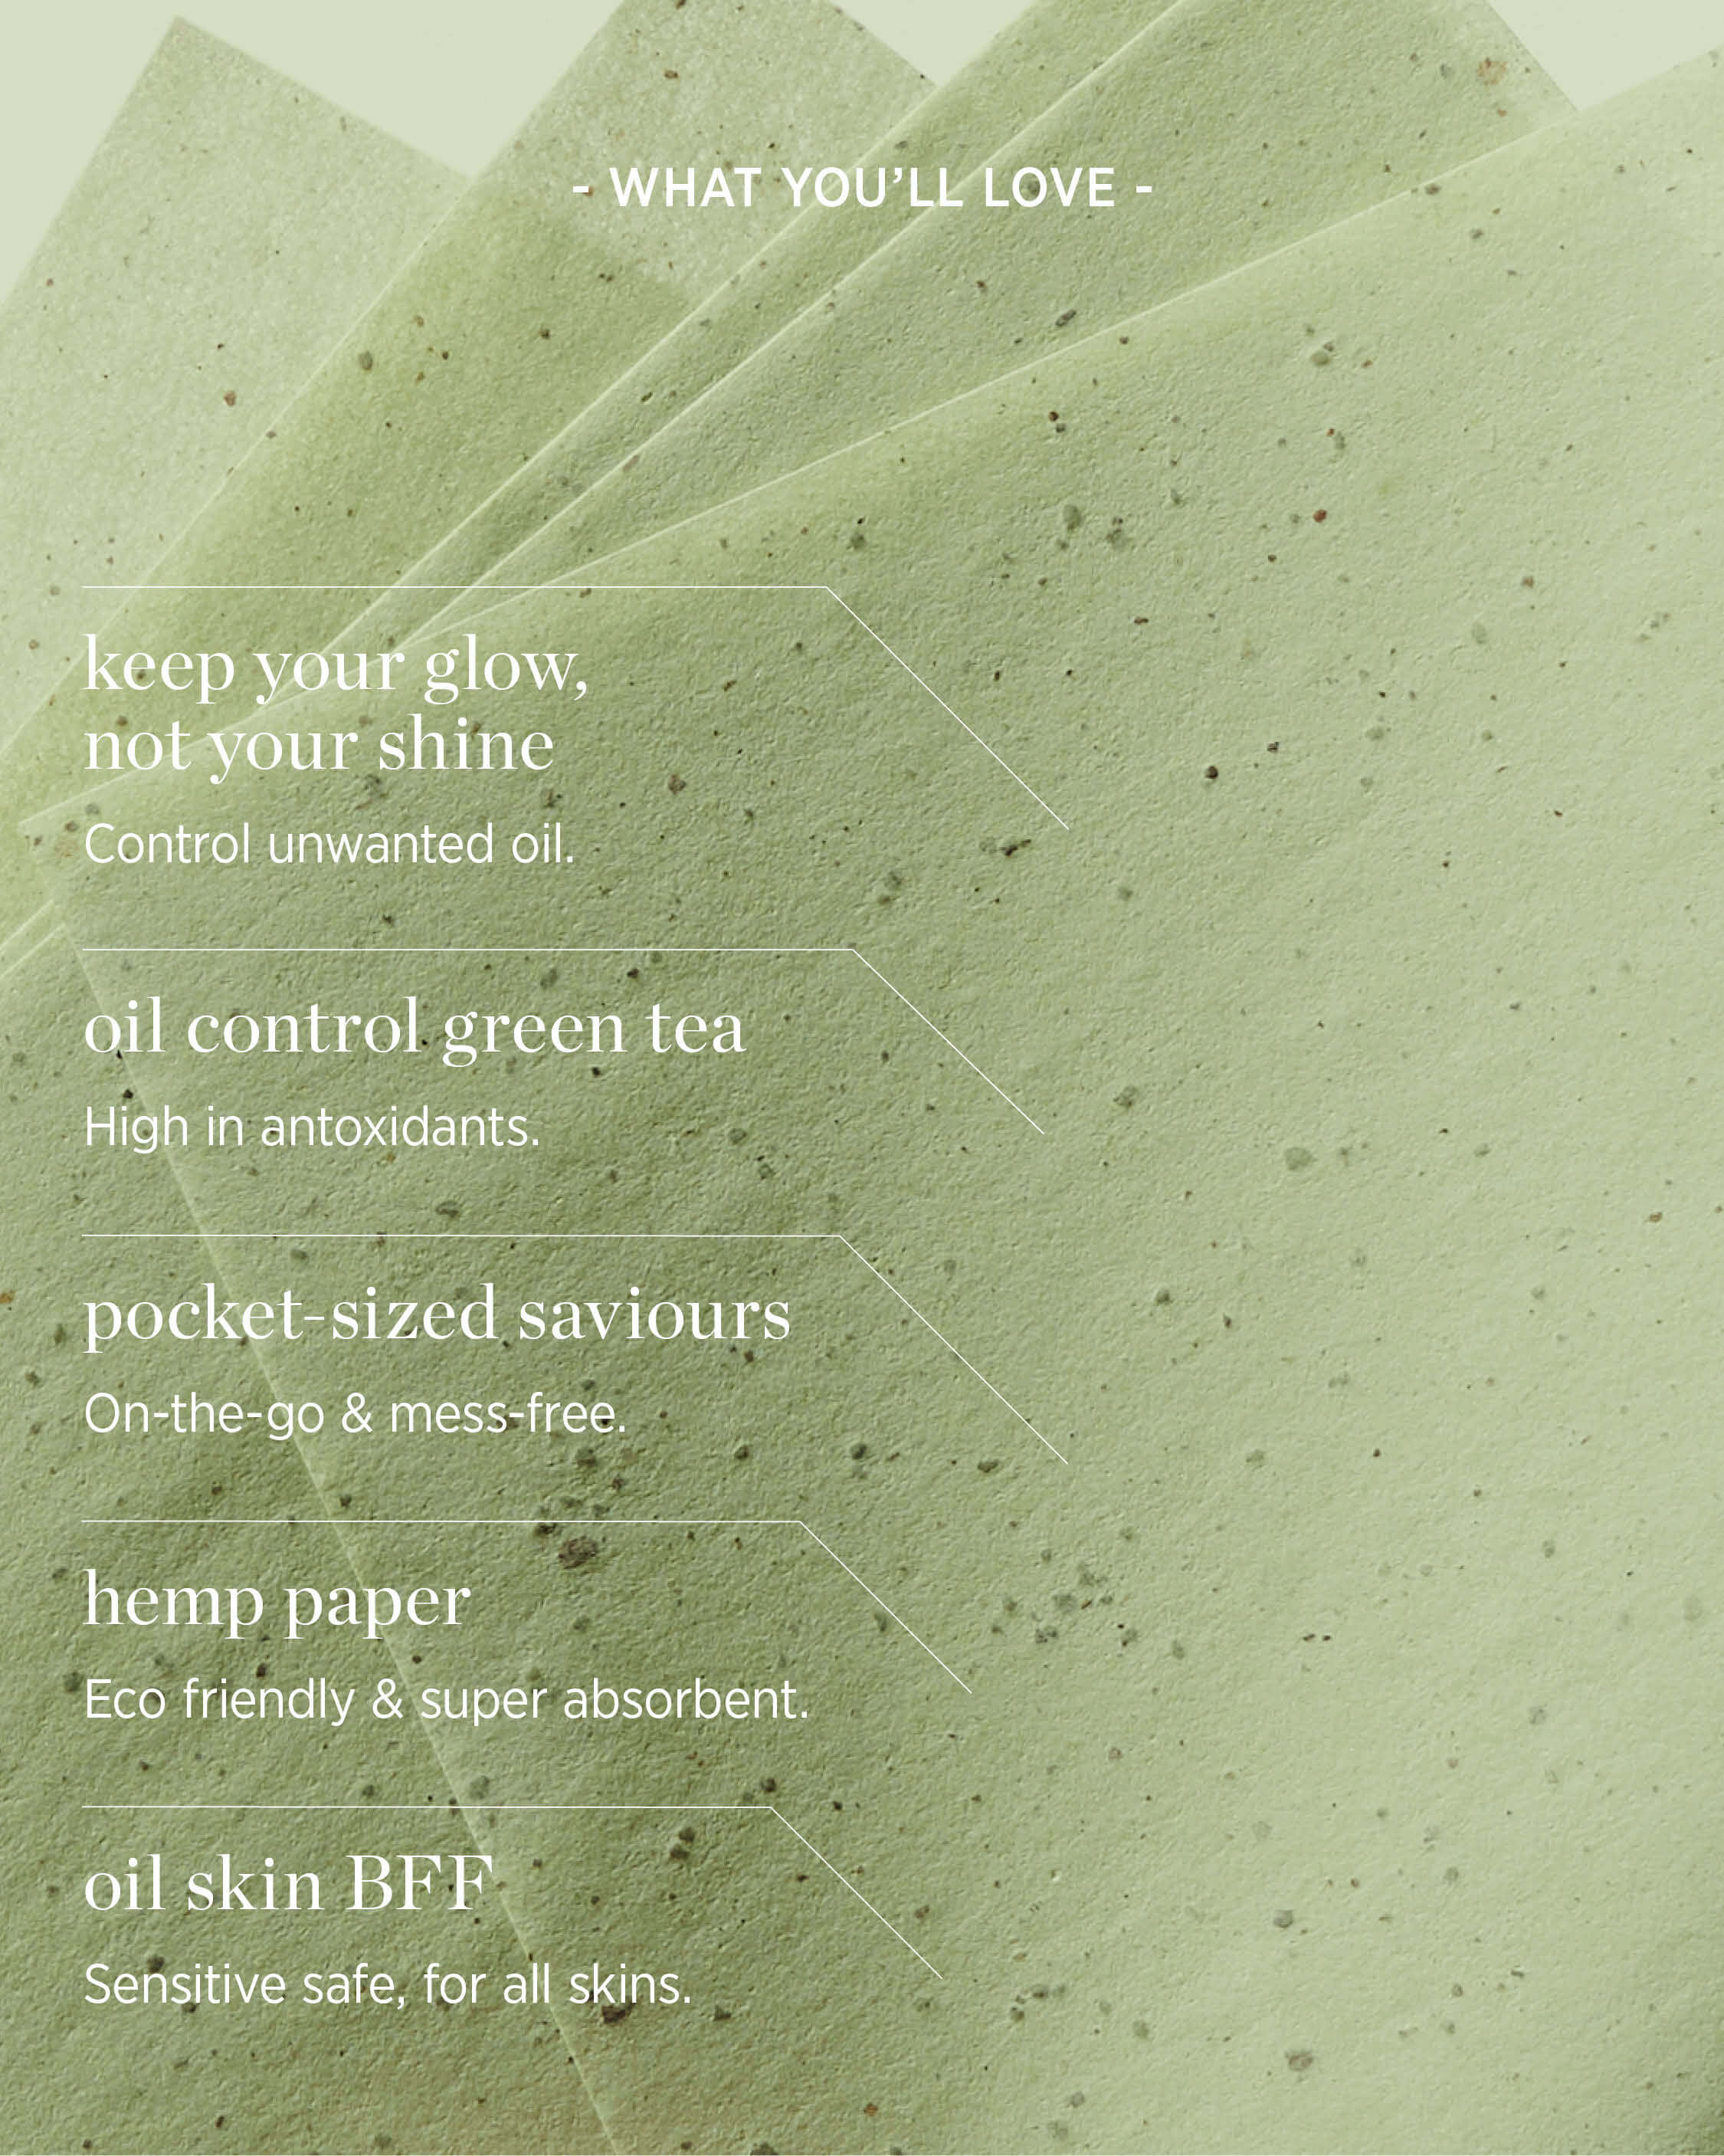 green tea oil control paper